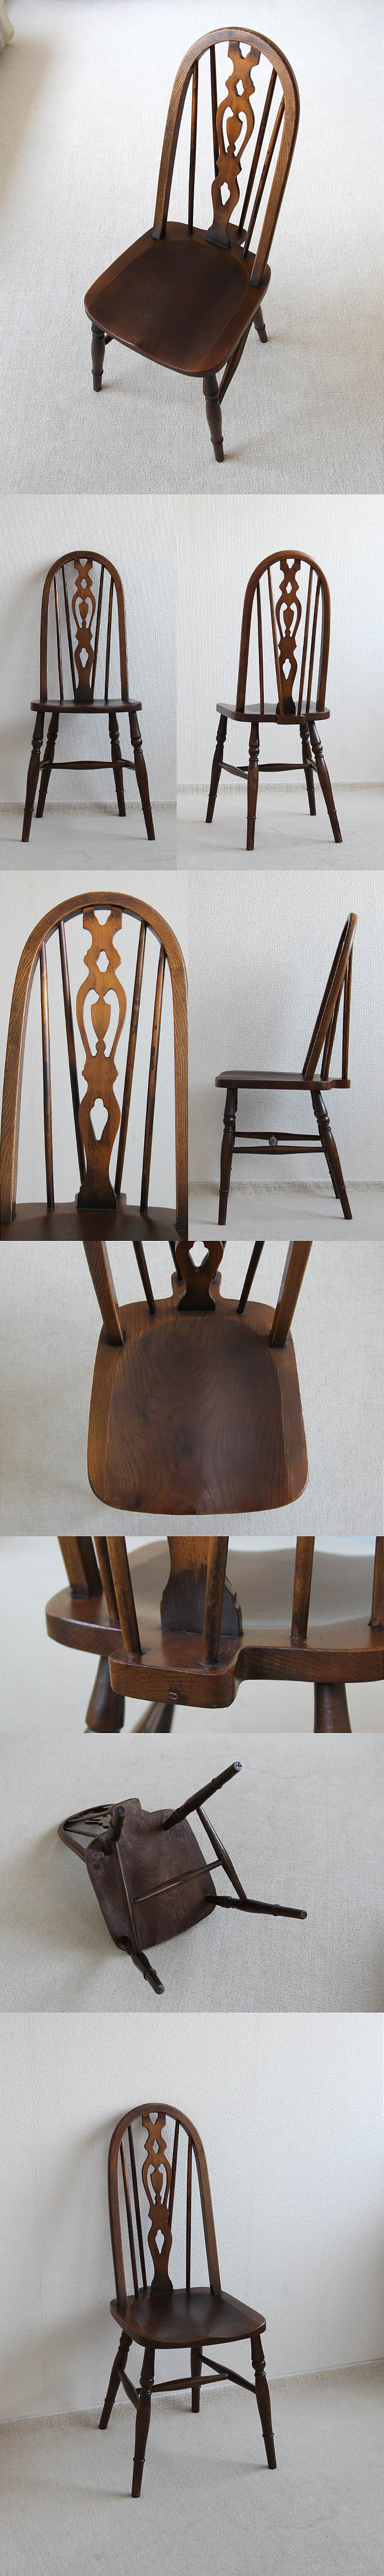 イギリス アンティーク調 ハイバックチェア 木製椅子 ダイニングチェア 家具「ウィンザースタイル」V-903